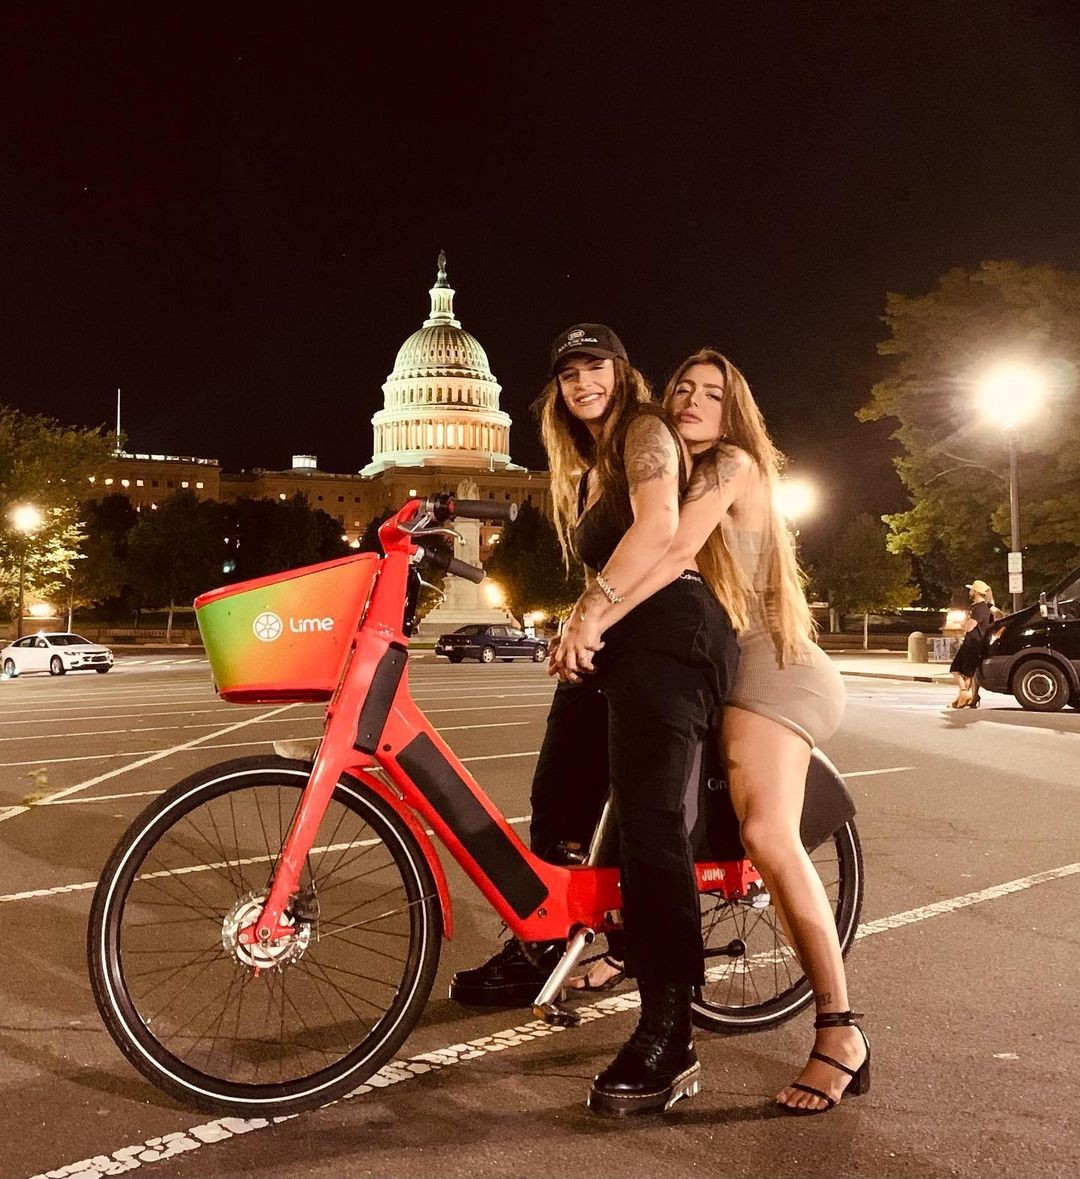 Nos EUA, Bárbara Labres noite ao lado da namorada: "Turistando 4 da manhã" (Foto: Reprodução/Instagram)